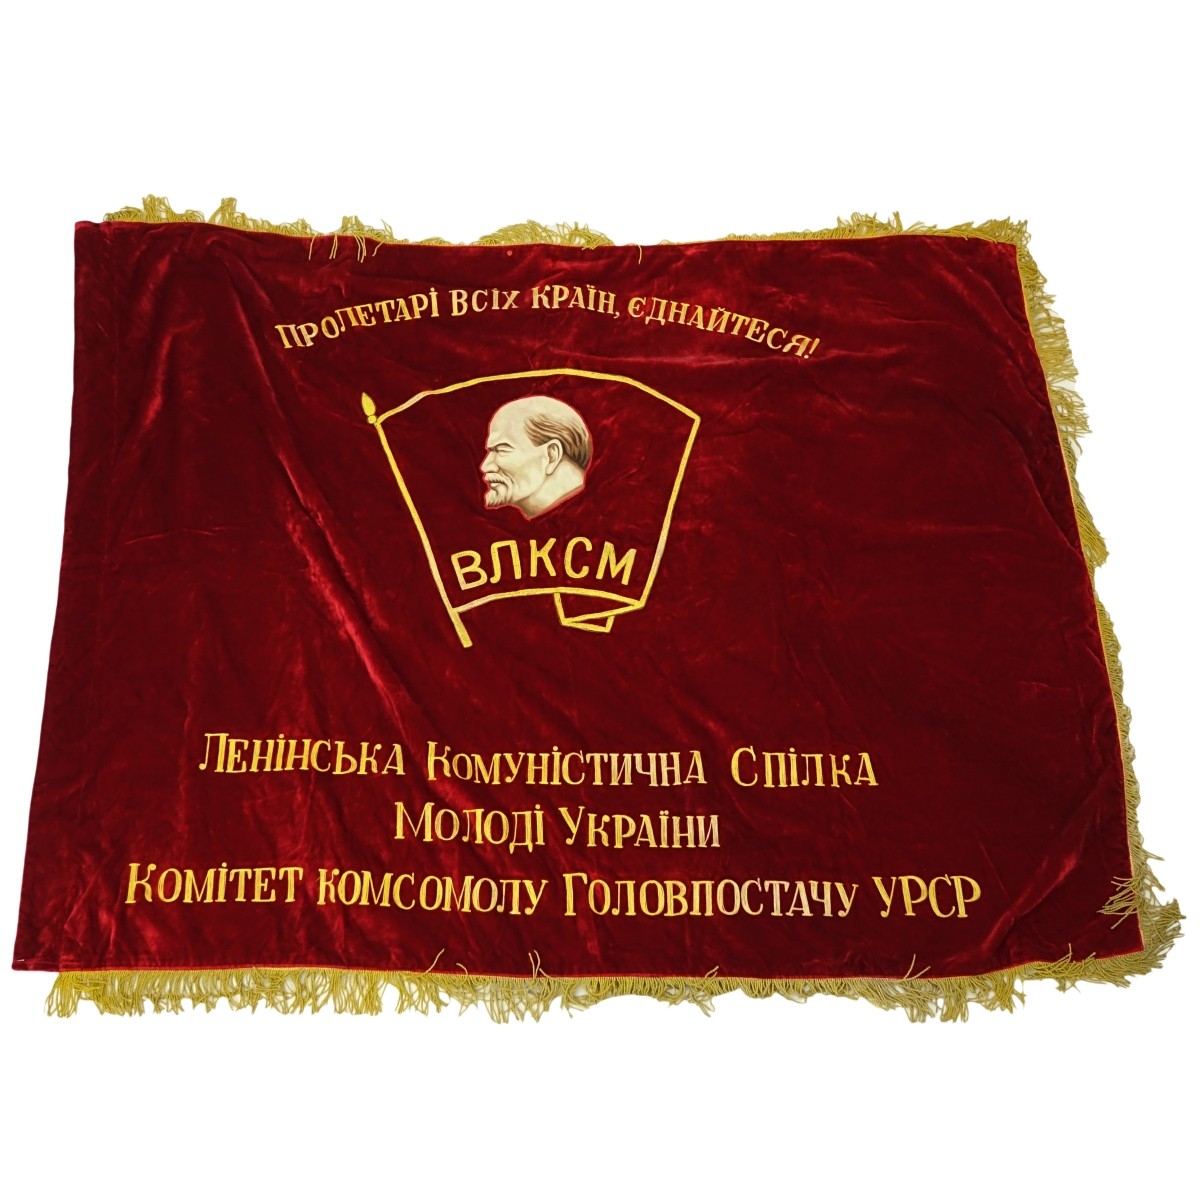 20th Century Russian Soviet Era Lenin-vlksm